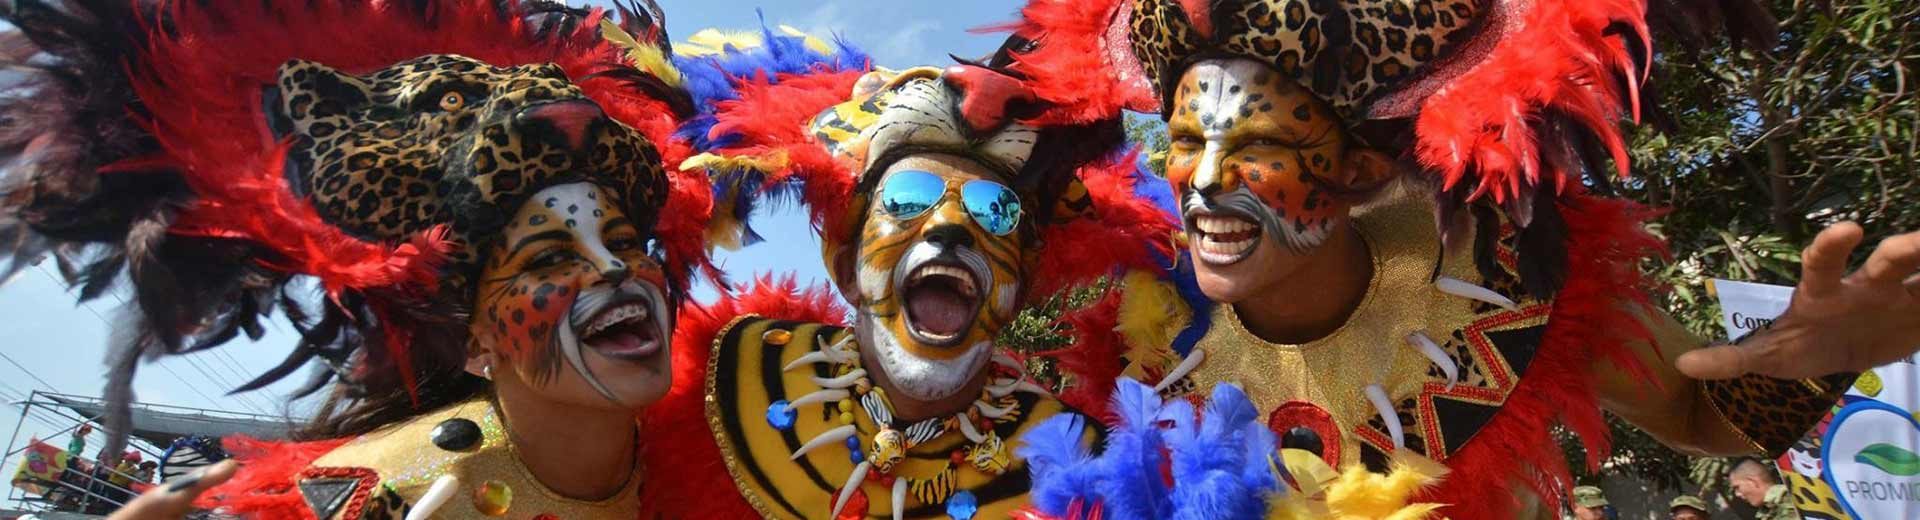 Carnaval em Barranquilla: Uma experiência fantástica